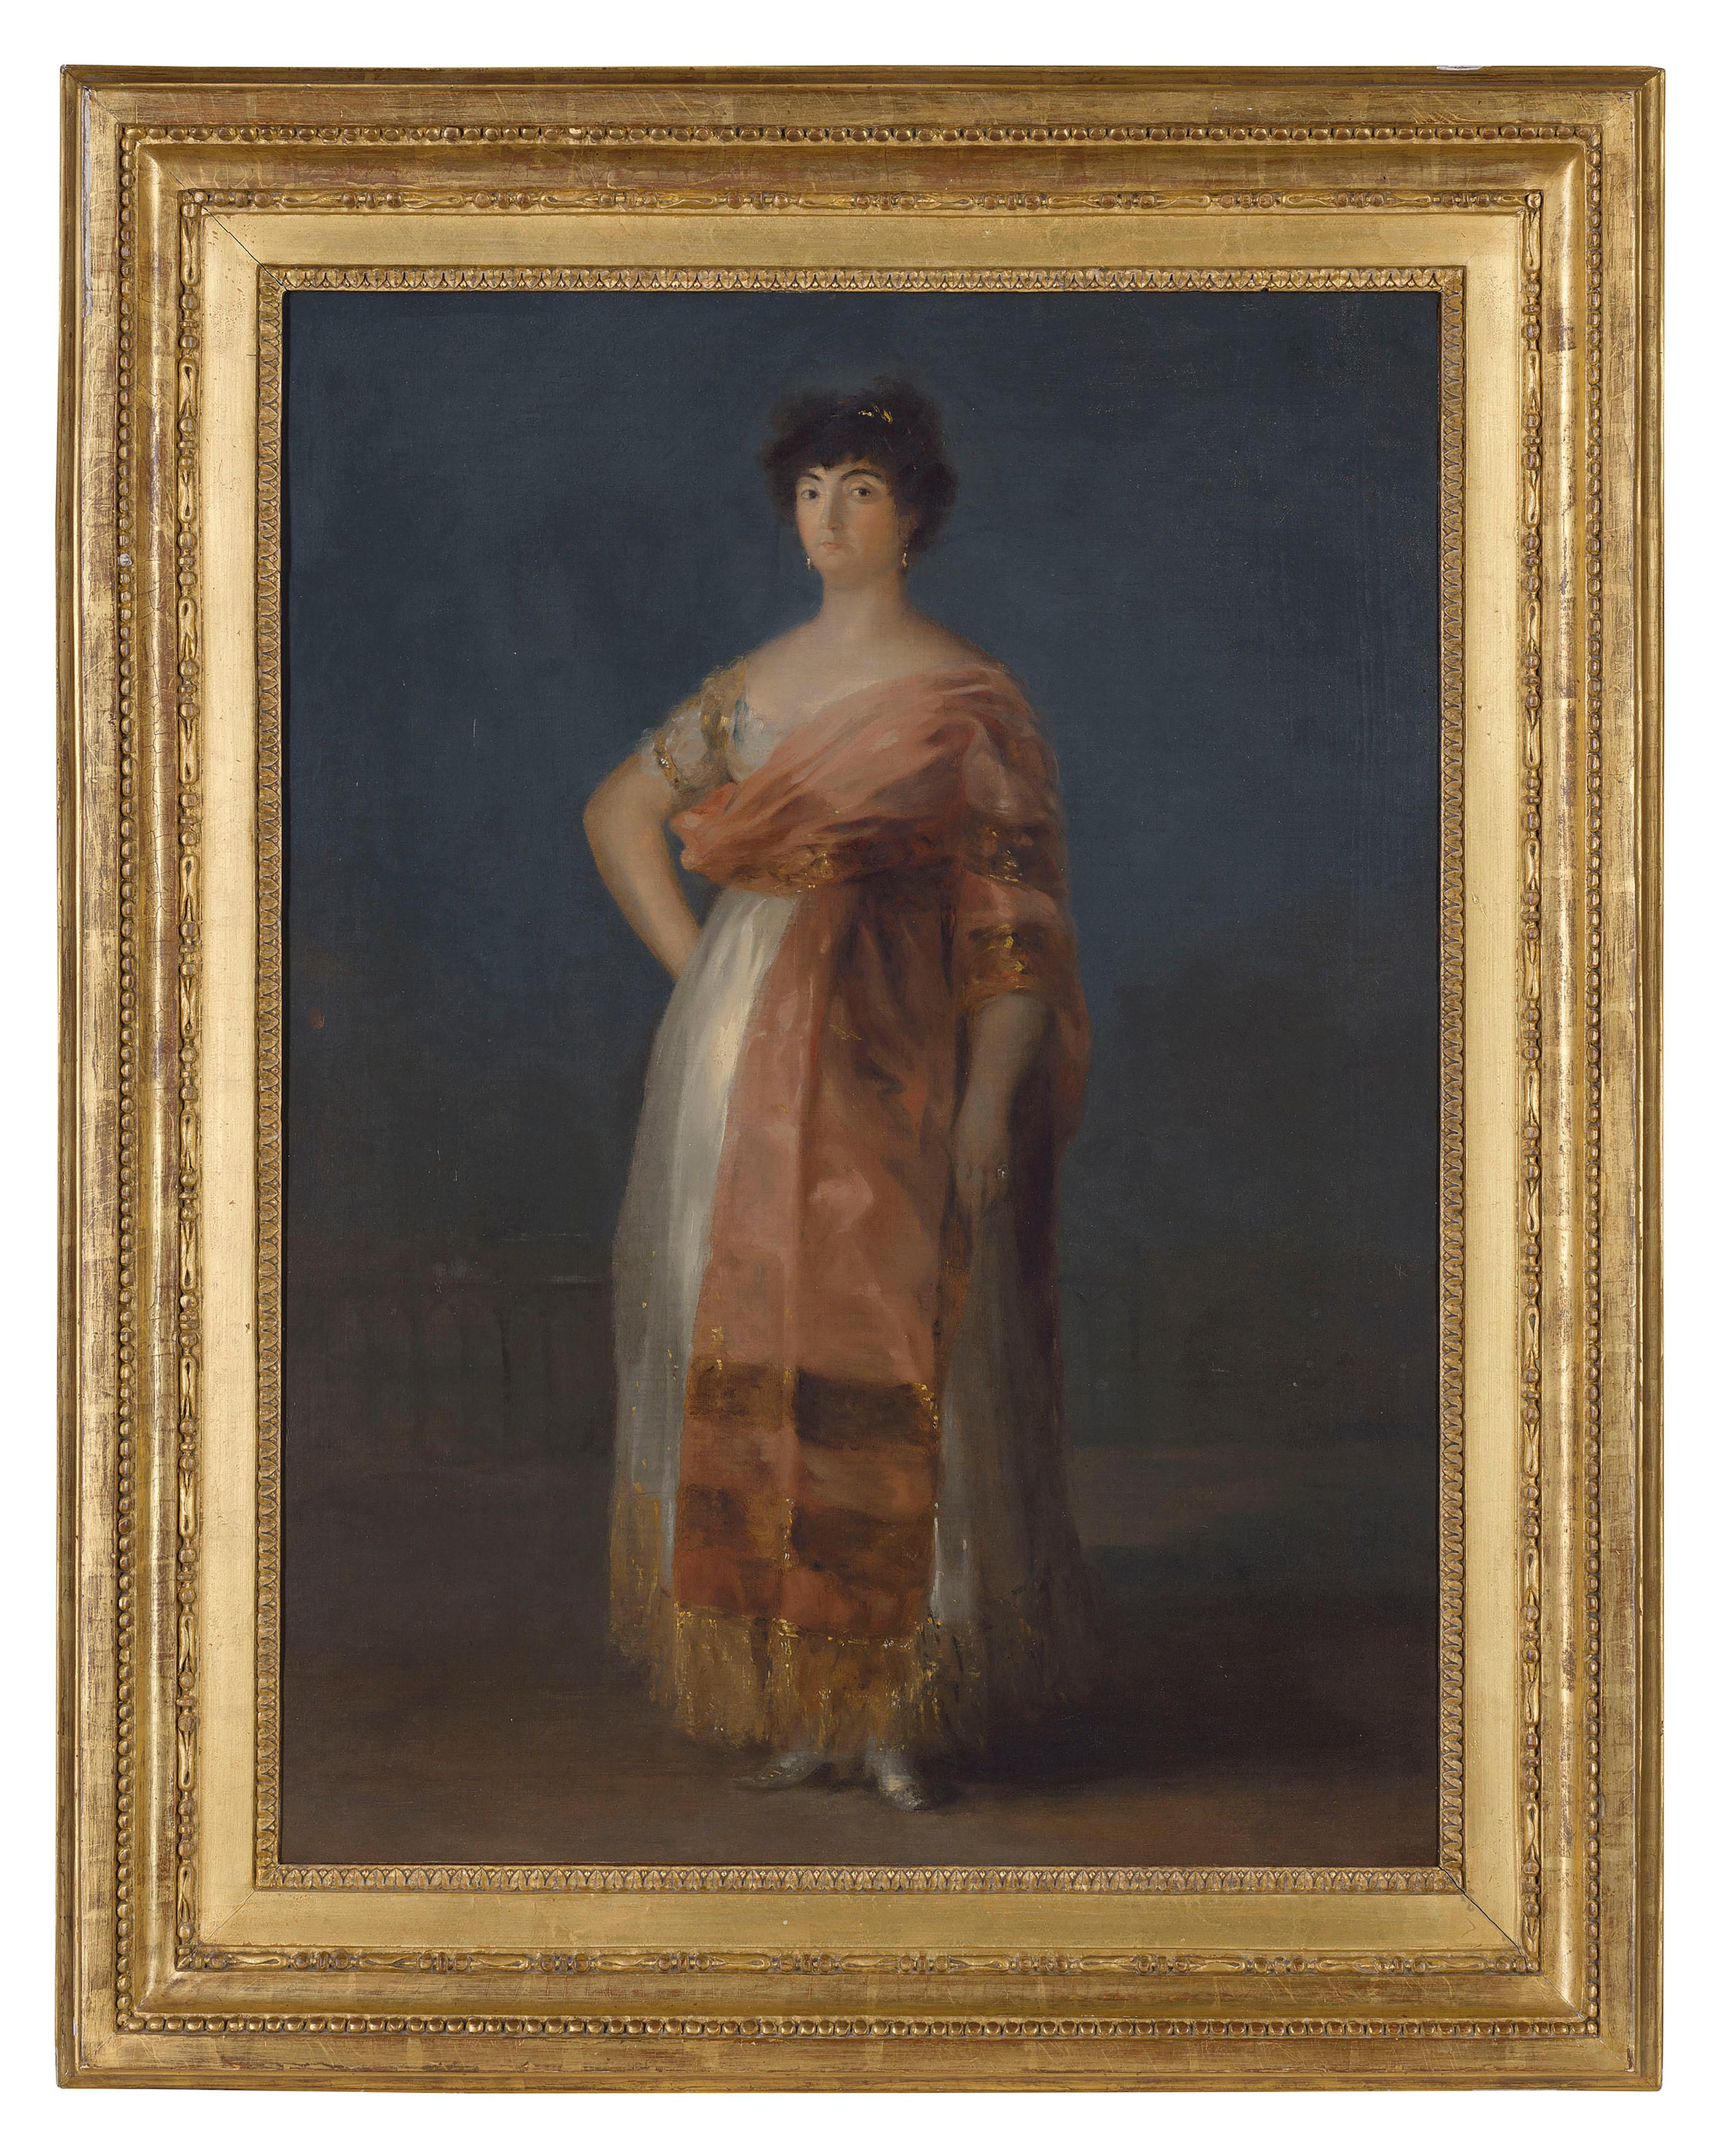 Portrait of a María del Rosario Fernandéz, called 'La Tirana' - Painting by Francisco José de Goya y Lucientes 